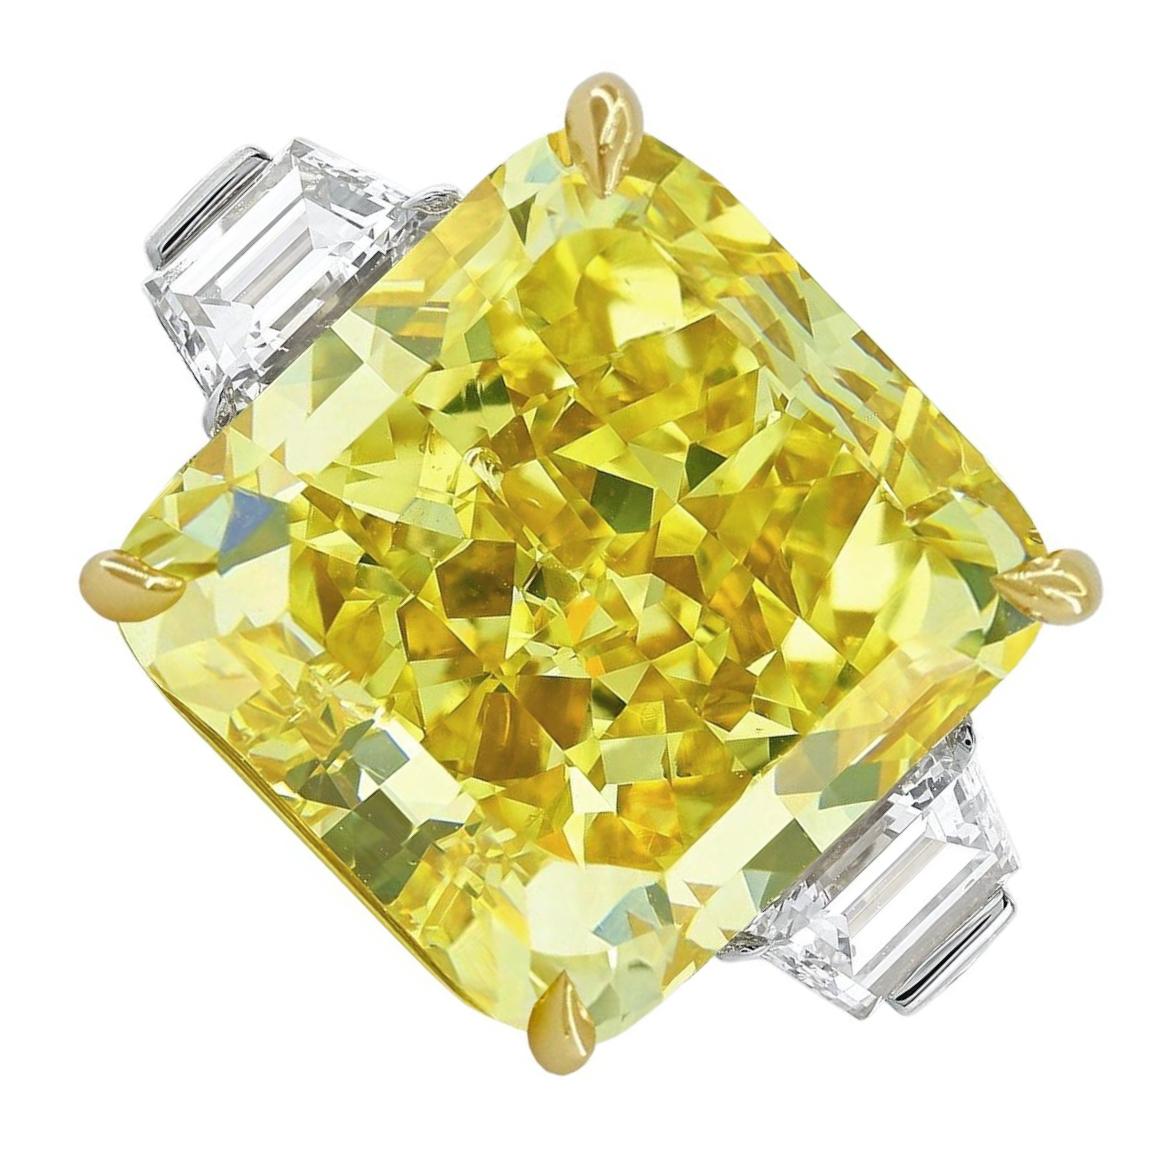  Bague certifiée GIA de 12 carats de diamant rayonnant de couleur jaune fantaisie, sertie de platine massif et d'or jaune 18 carats.

Fabriquée à la perfection et certifiée par le GIA, cette bague à couper le souffle est ornée d'un superbe diamant